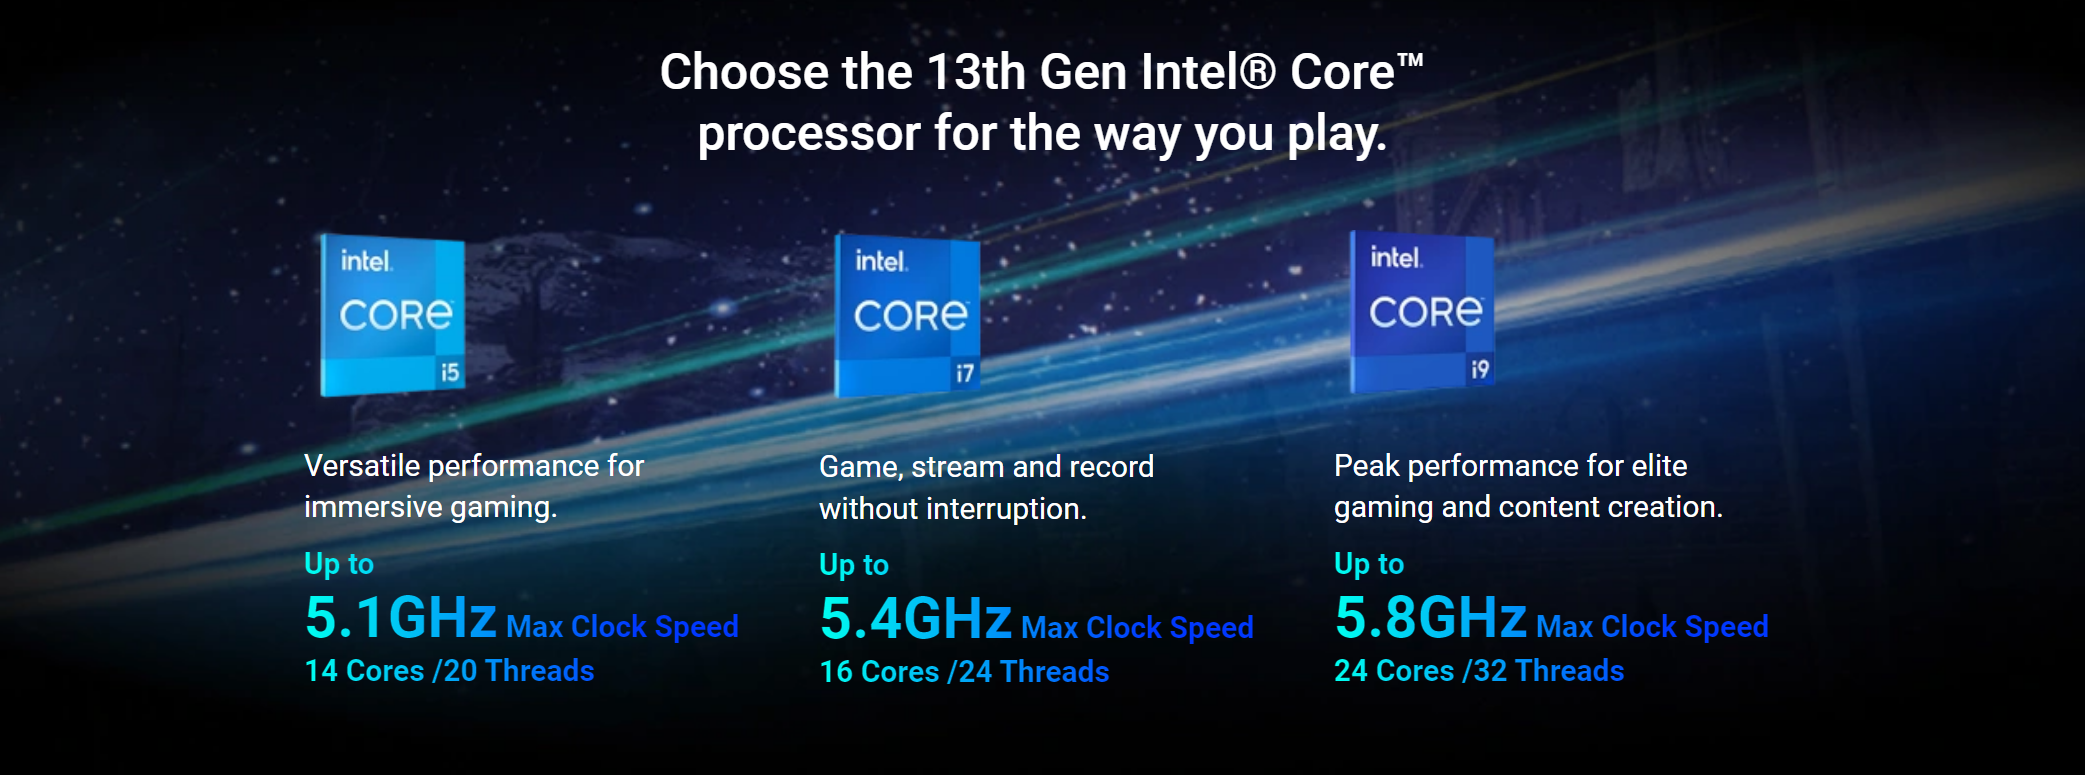 Intel Core i3, i5, i7 laptop CPUs explained: i-Caramba - CNET